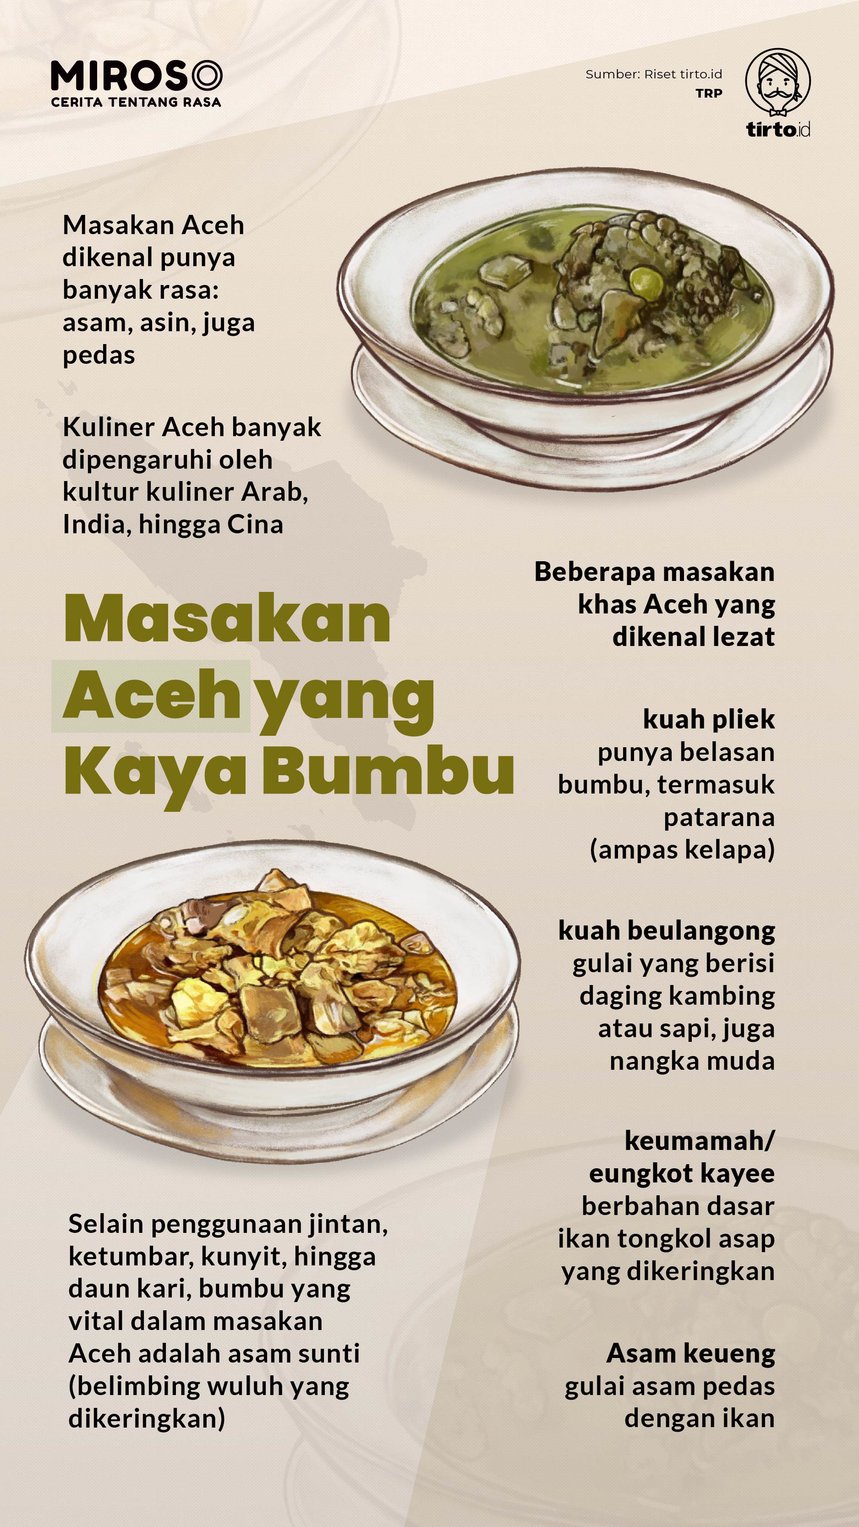 Infografik Miroso Masakan Aceh yang Kaya Bumbu